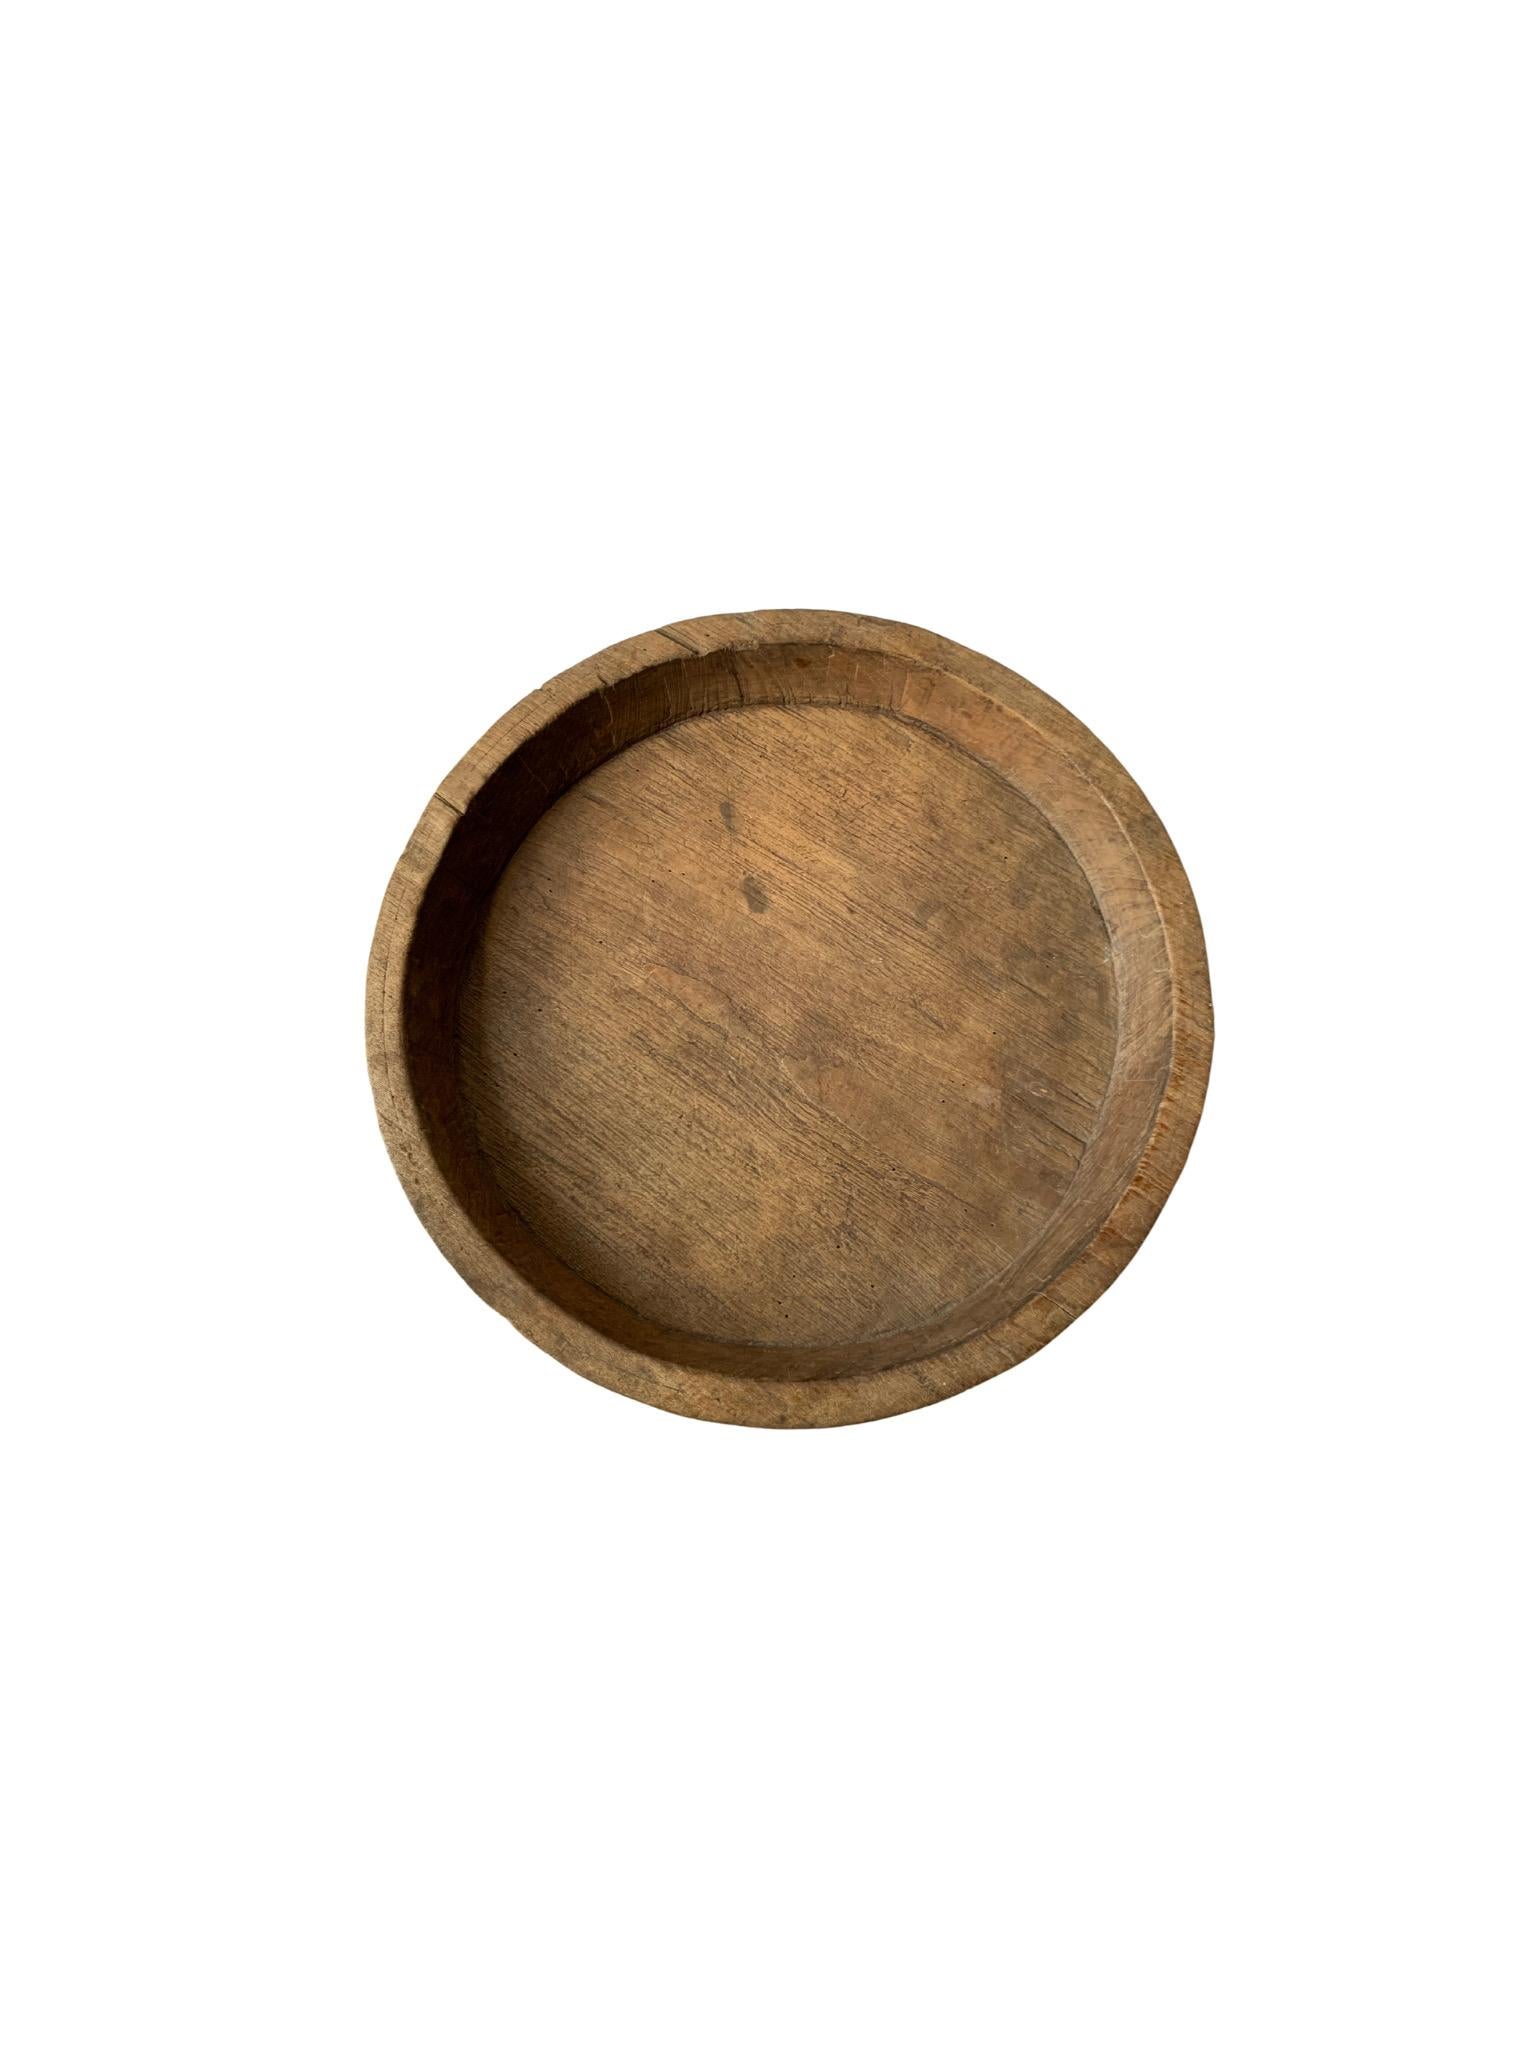 Un bol en bois de teck fabriqué sur l'île de Java, en Indonésie. Le bol a été découpé dans une plaque de bois beaucoup plus grande et conserve un design minimaliste. 

